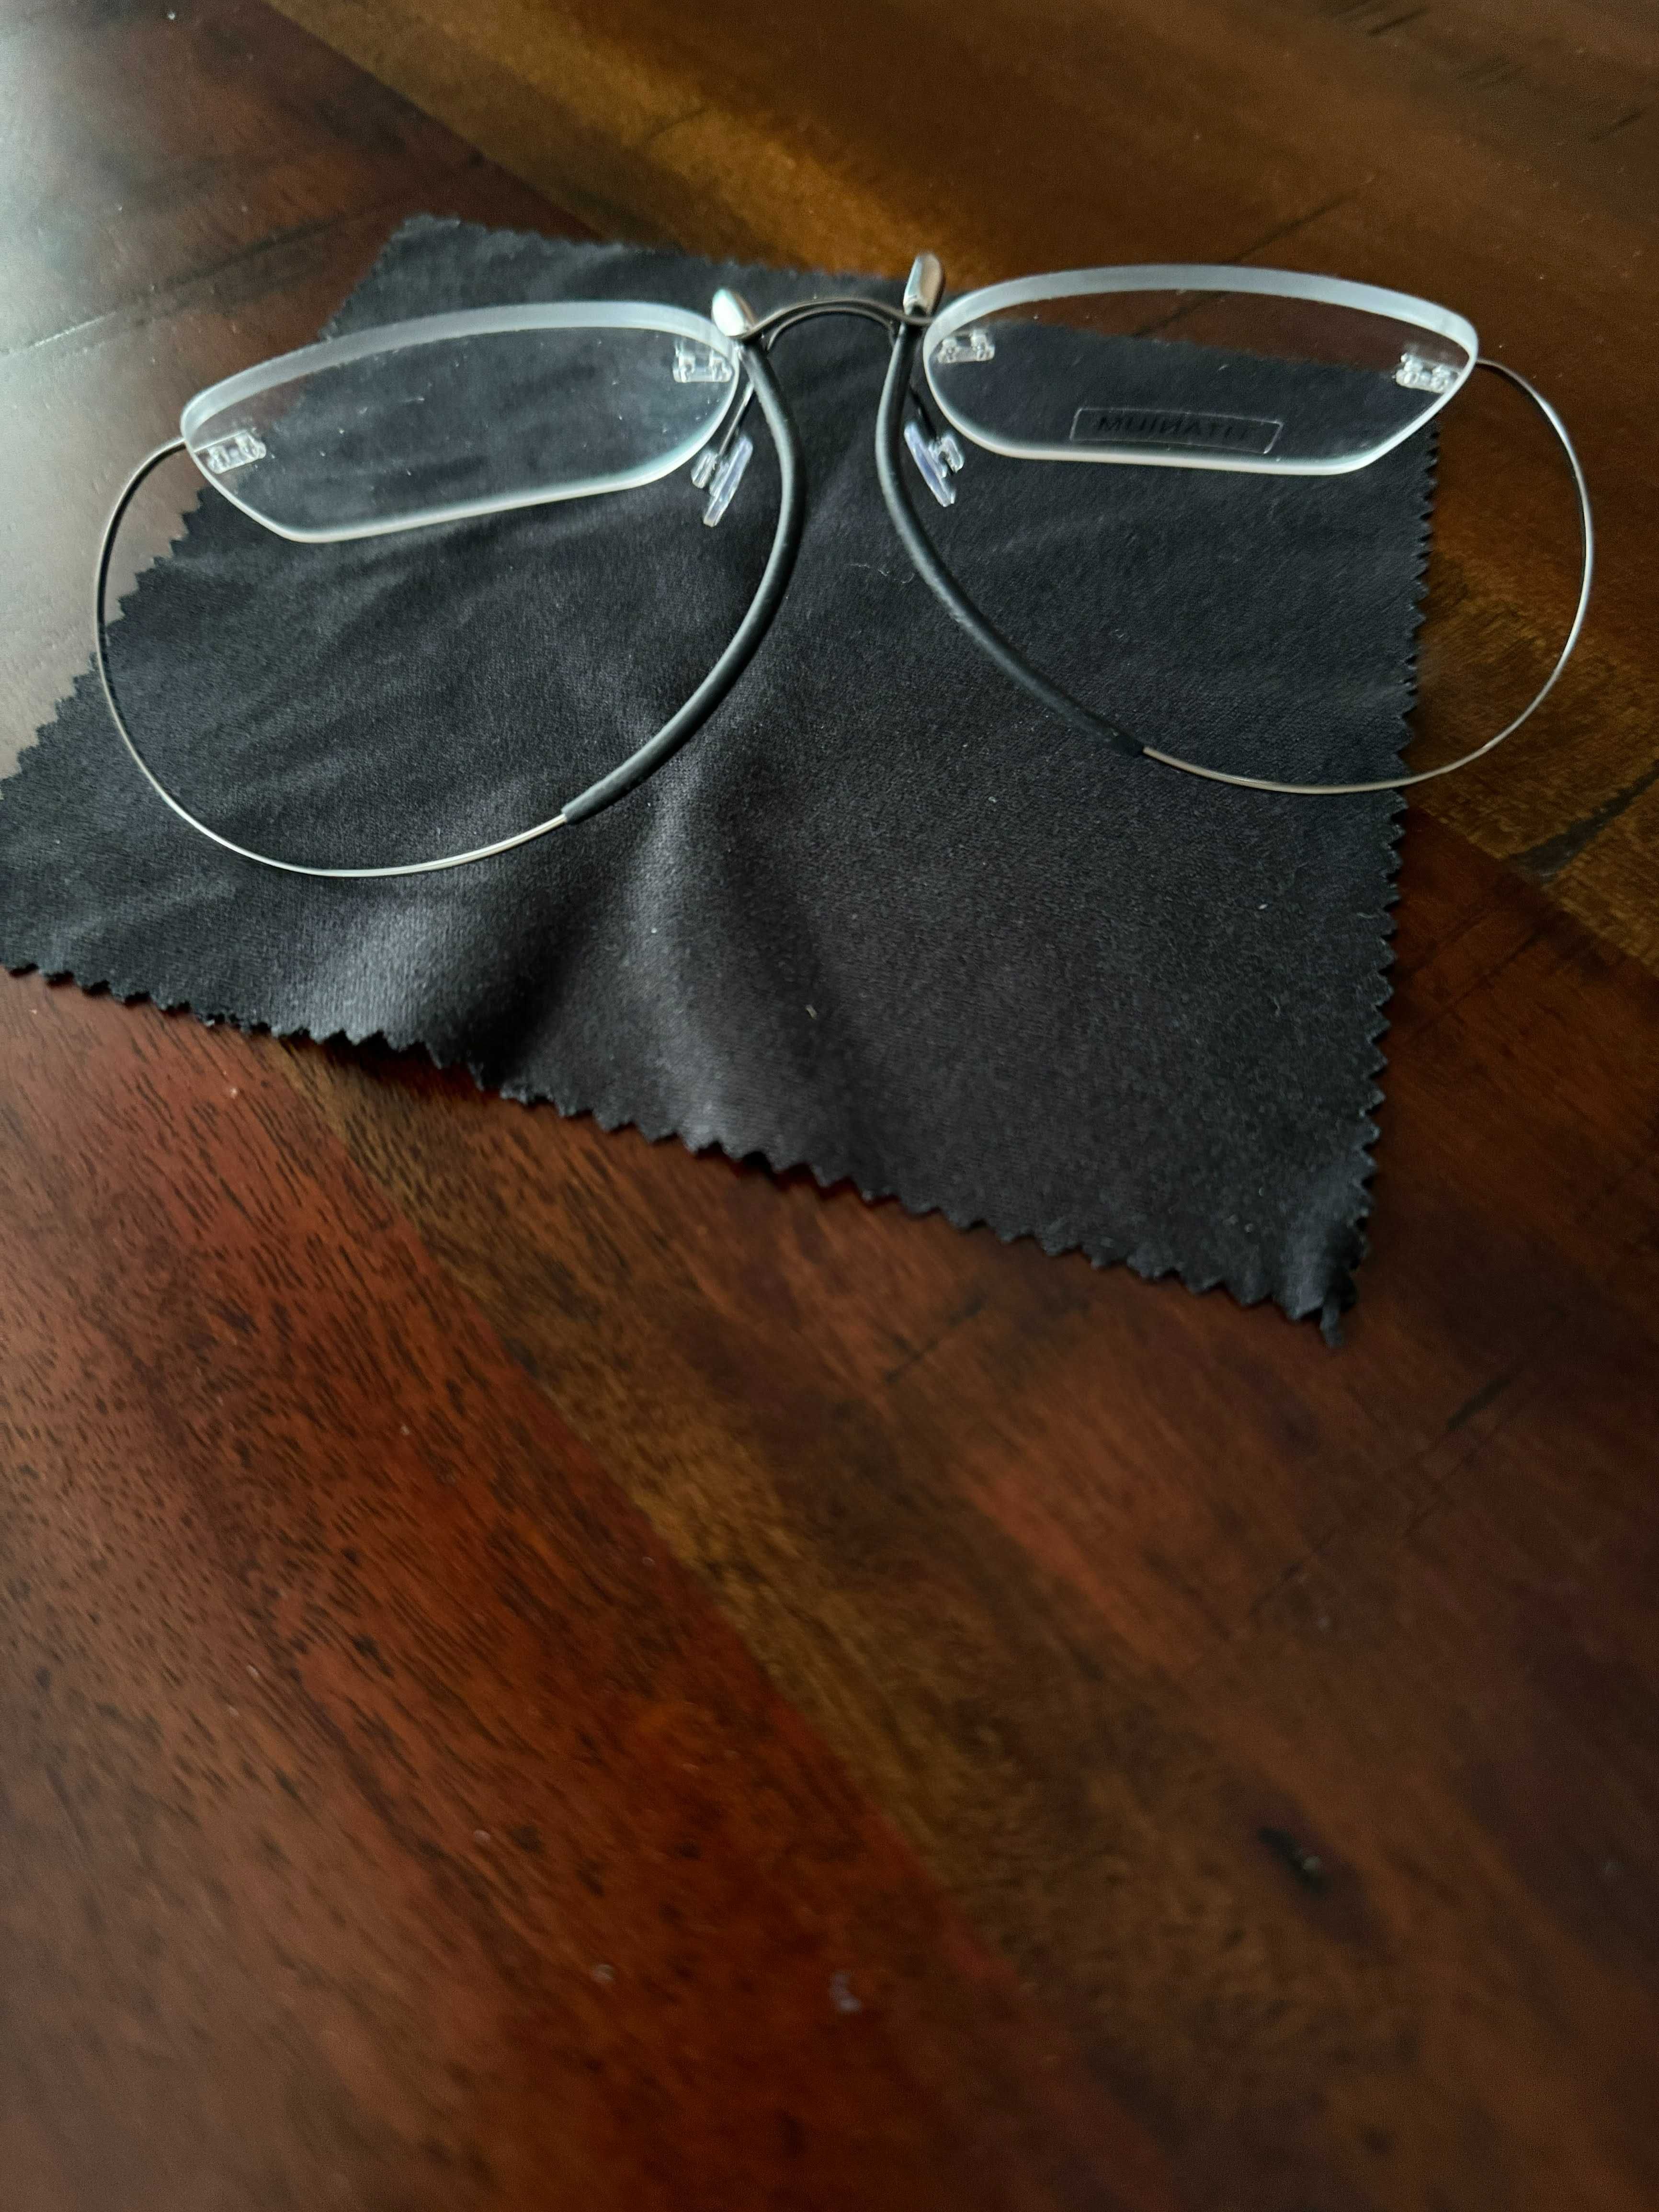 Tитаниеви рамки за очила. Цвят по избор/ (Silhouette - съвместими)